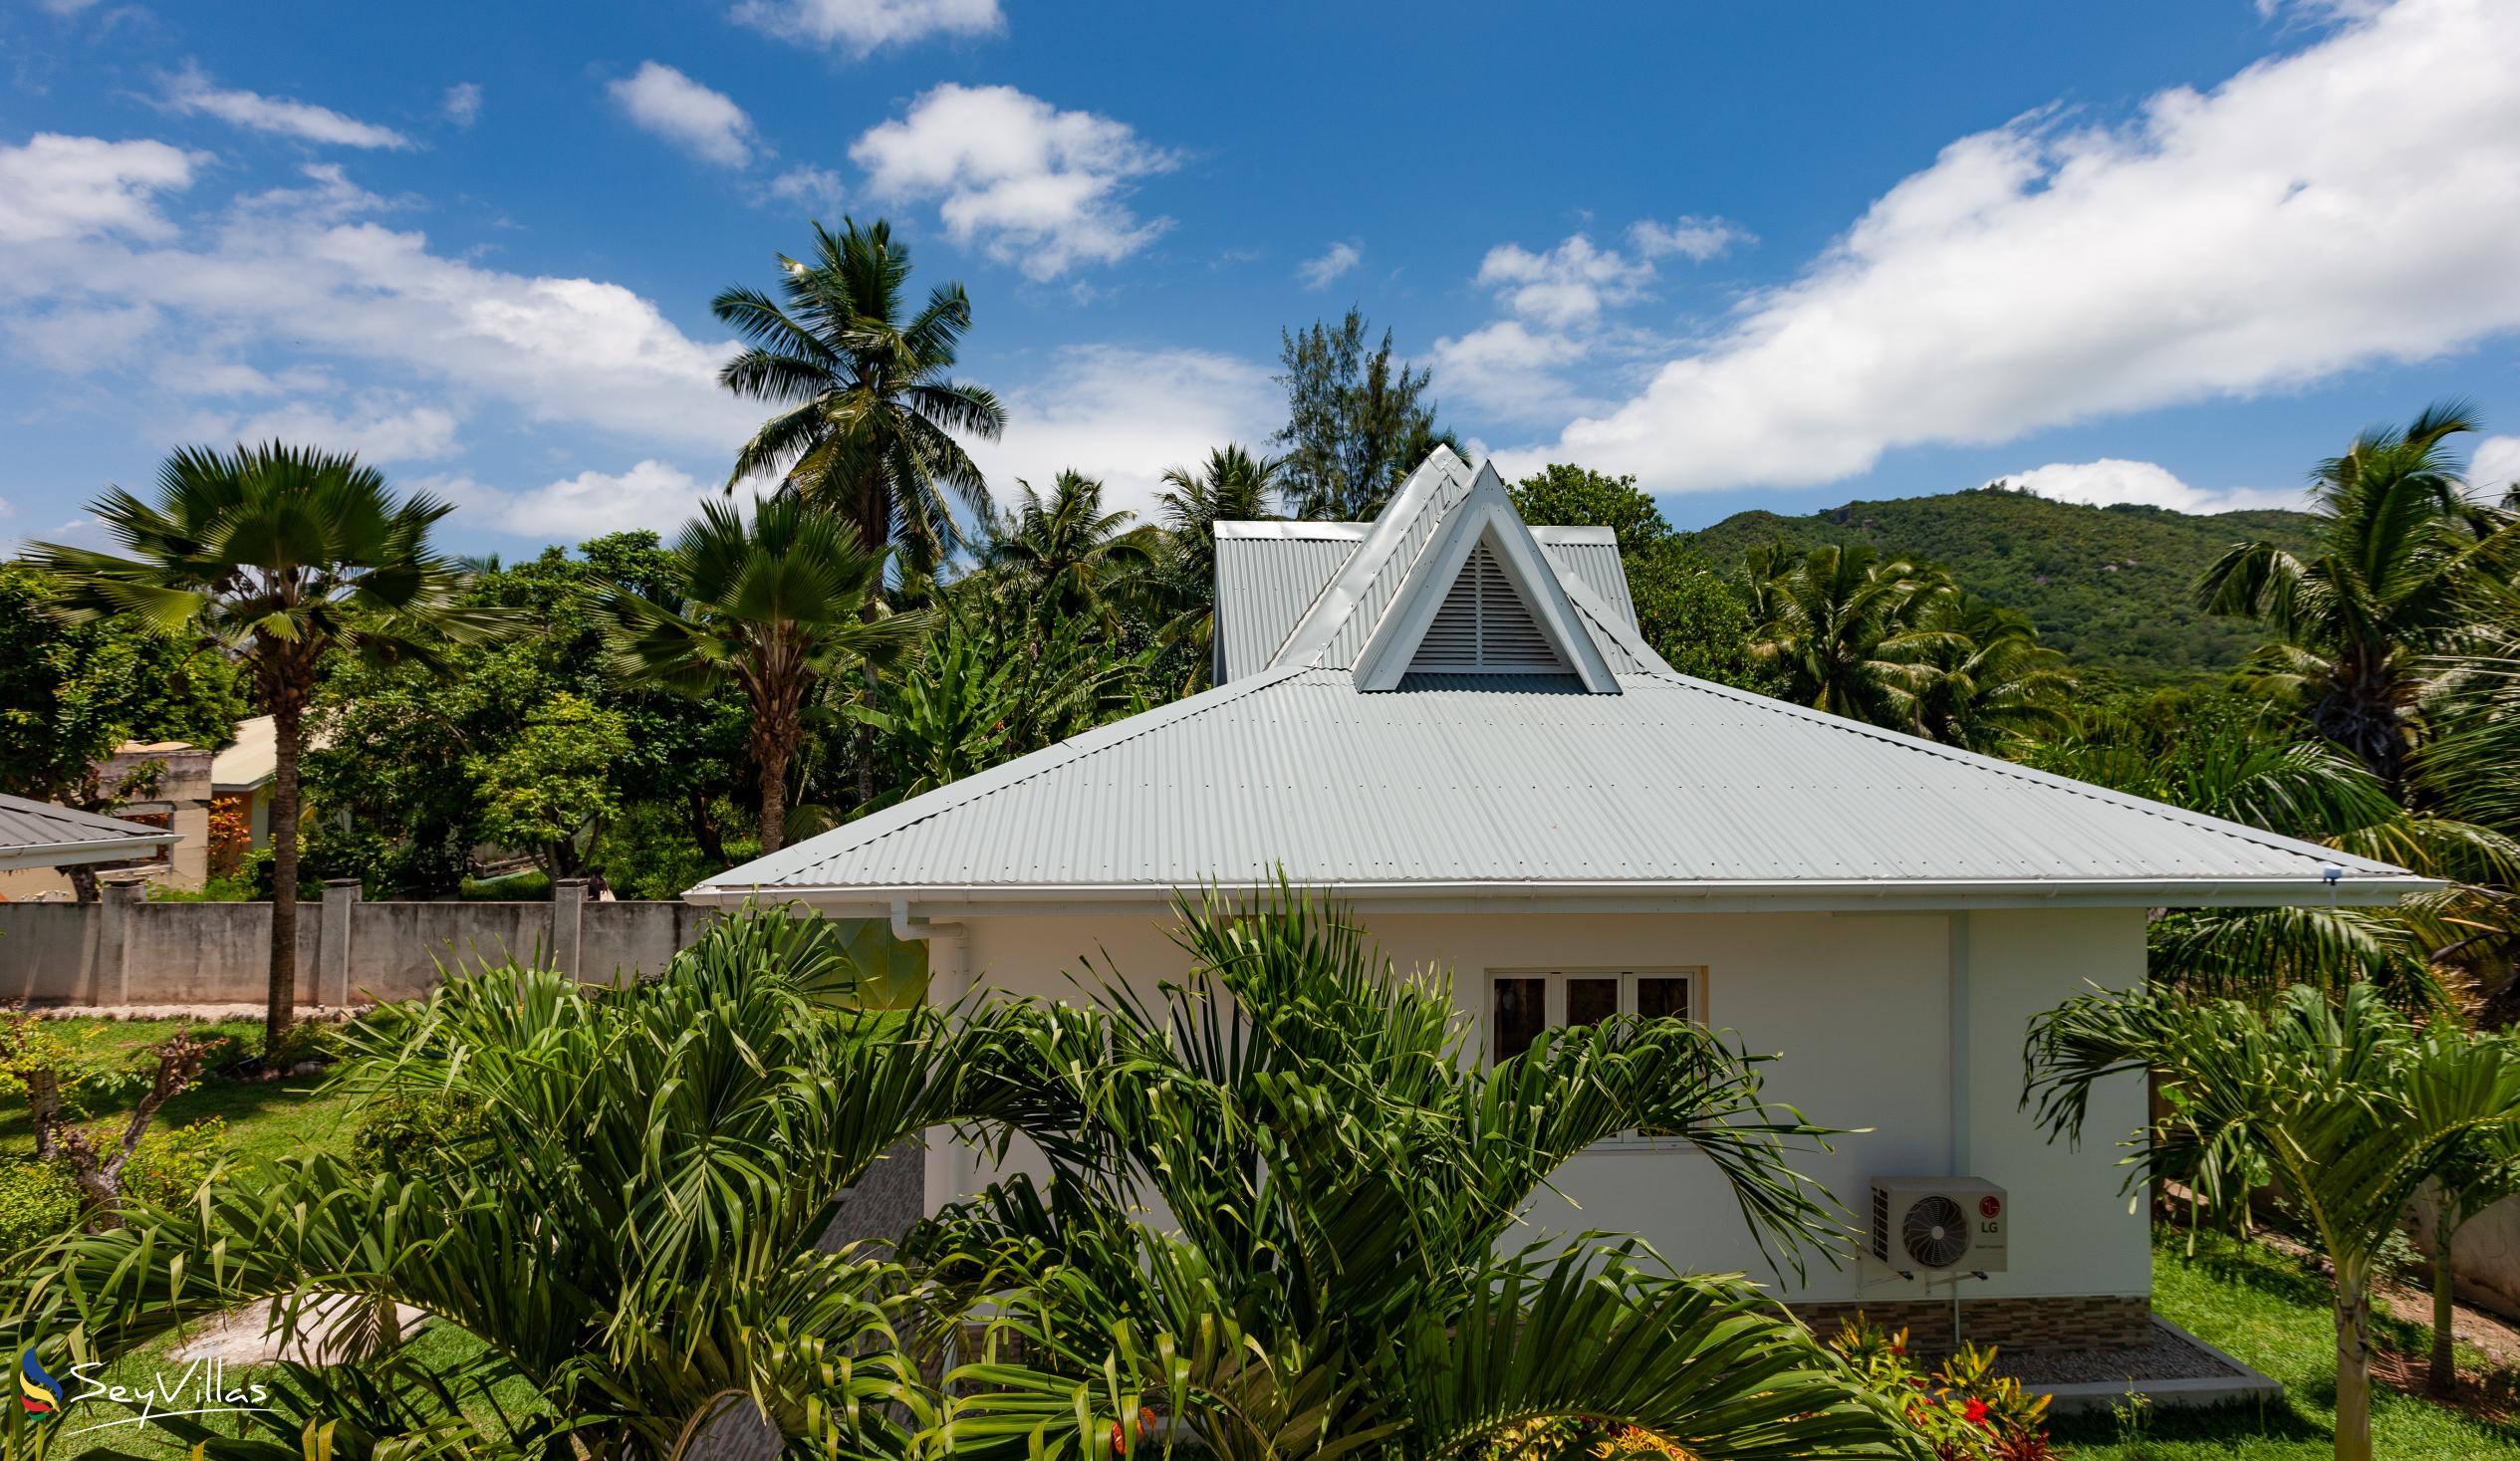 Photo 9: Villa Aya - Outdoor area - Praslin (Seychelles)